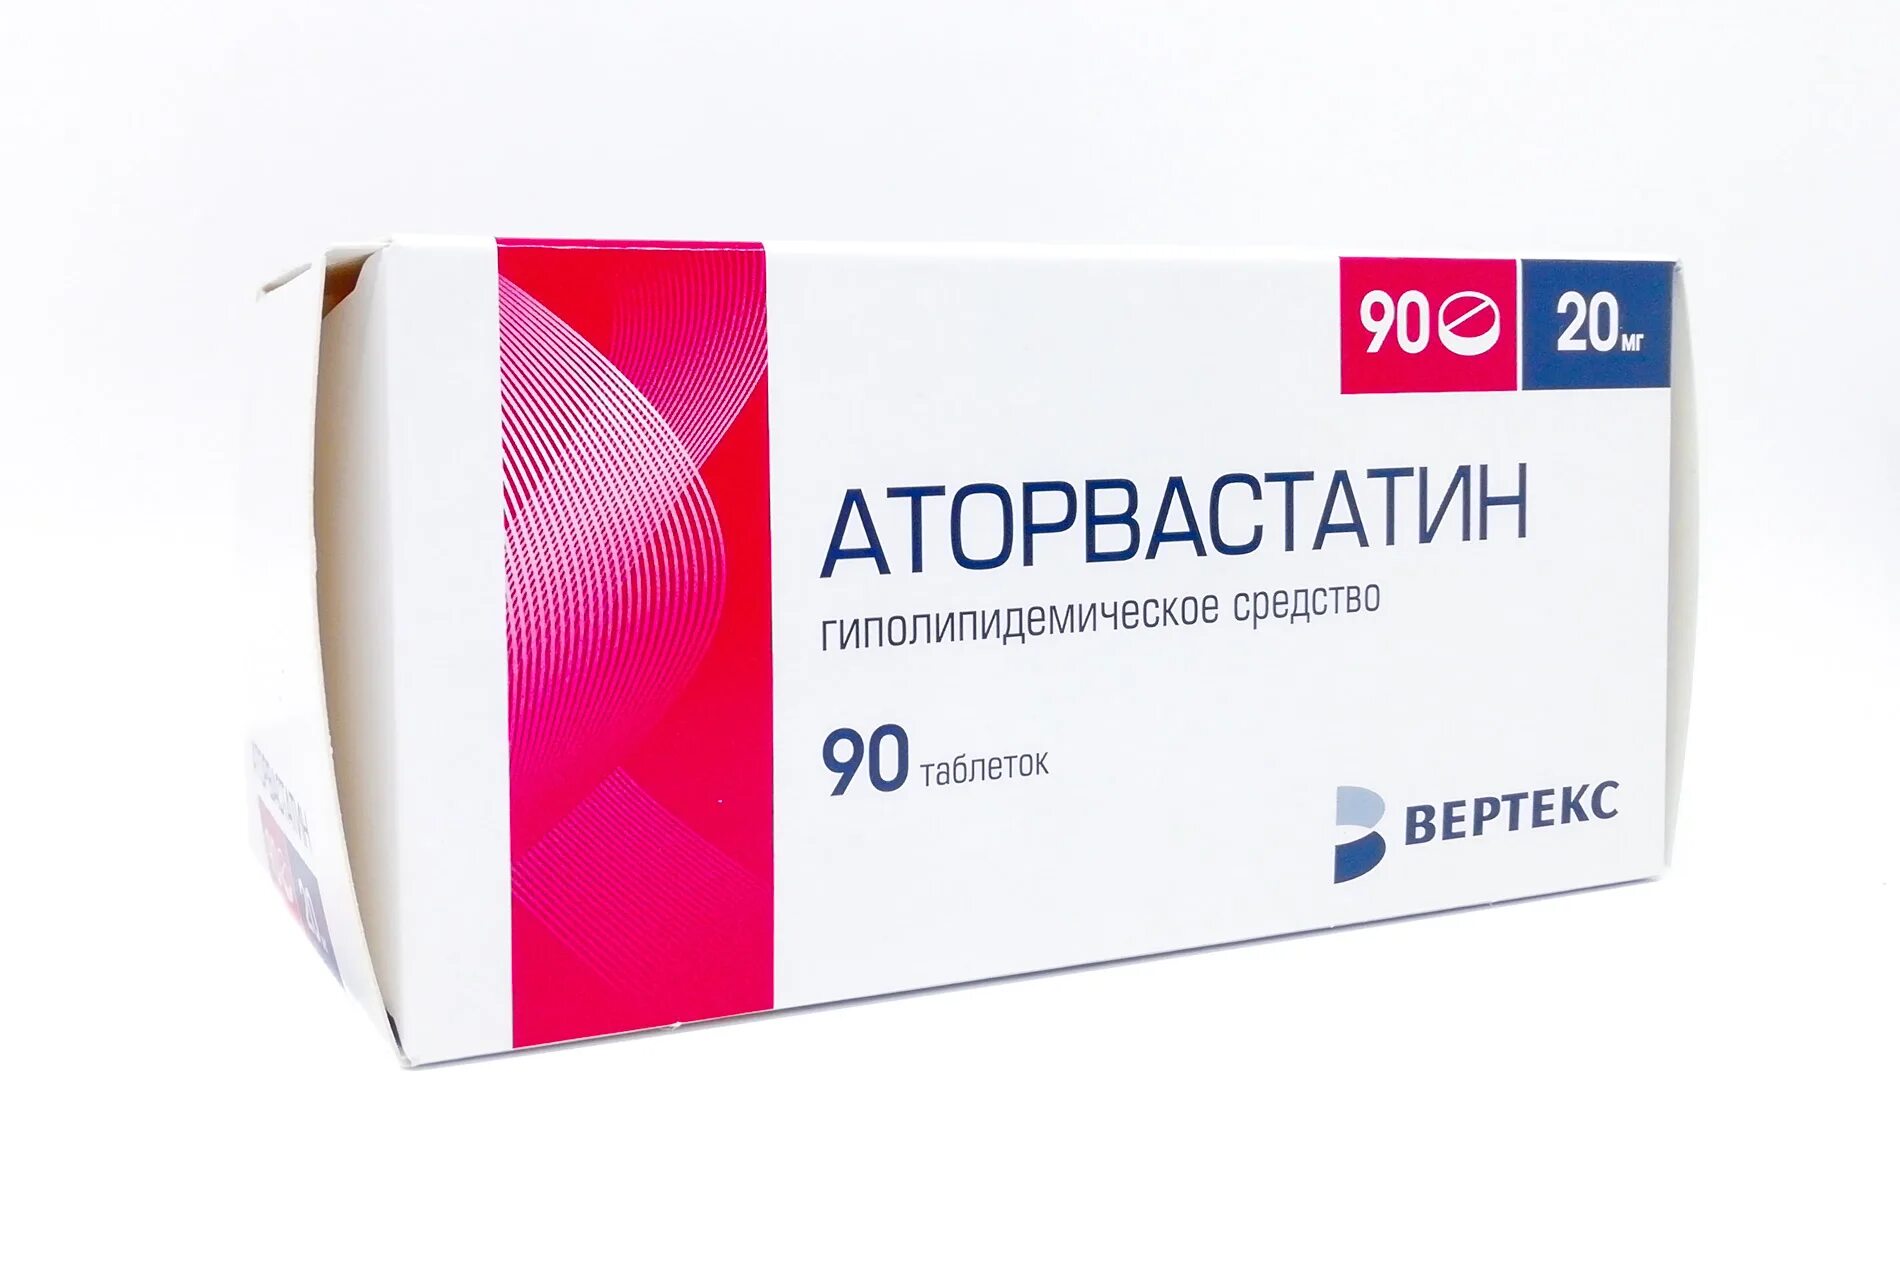 Розувастатин 10 мг купить в спб. Аторвастатин-Вертекс 40мг таблетки. Аторвастатин 20 мг таблетки. Аторвастатин 40 мг Вертекс. Розувастатин 10 мг Вертекс.